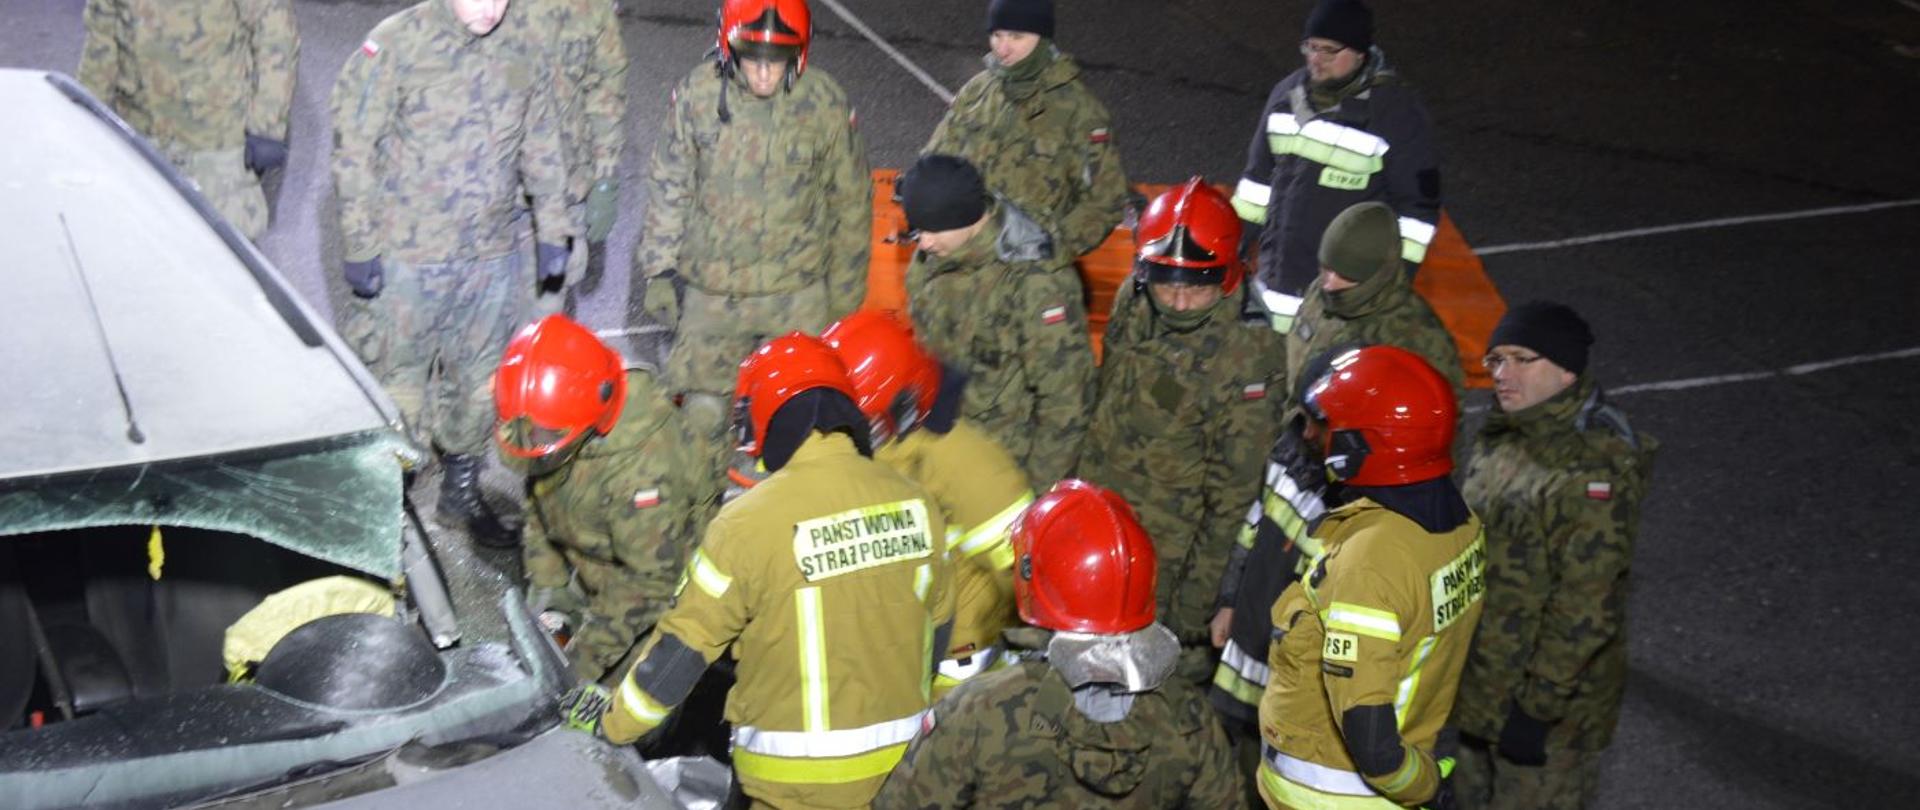 Współdziałanie z WOT. Plac Komendy Powiatowej PSP w Rawiczu. Widok z dachu pojazdu na żołnierzy i strażaków, którzy ćwiczą rozcinanie samochodu osobowego z użyciem narzędzi hydraulicznych.